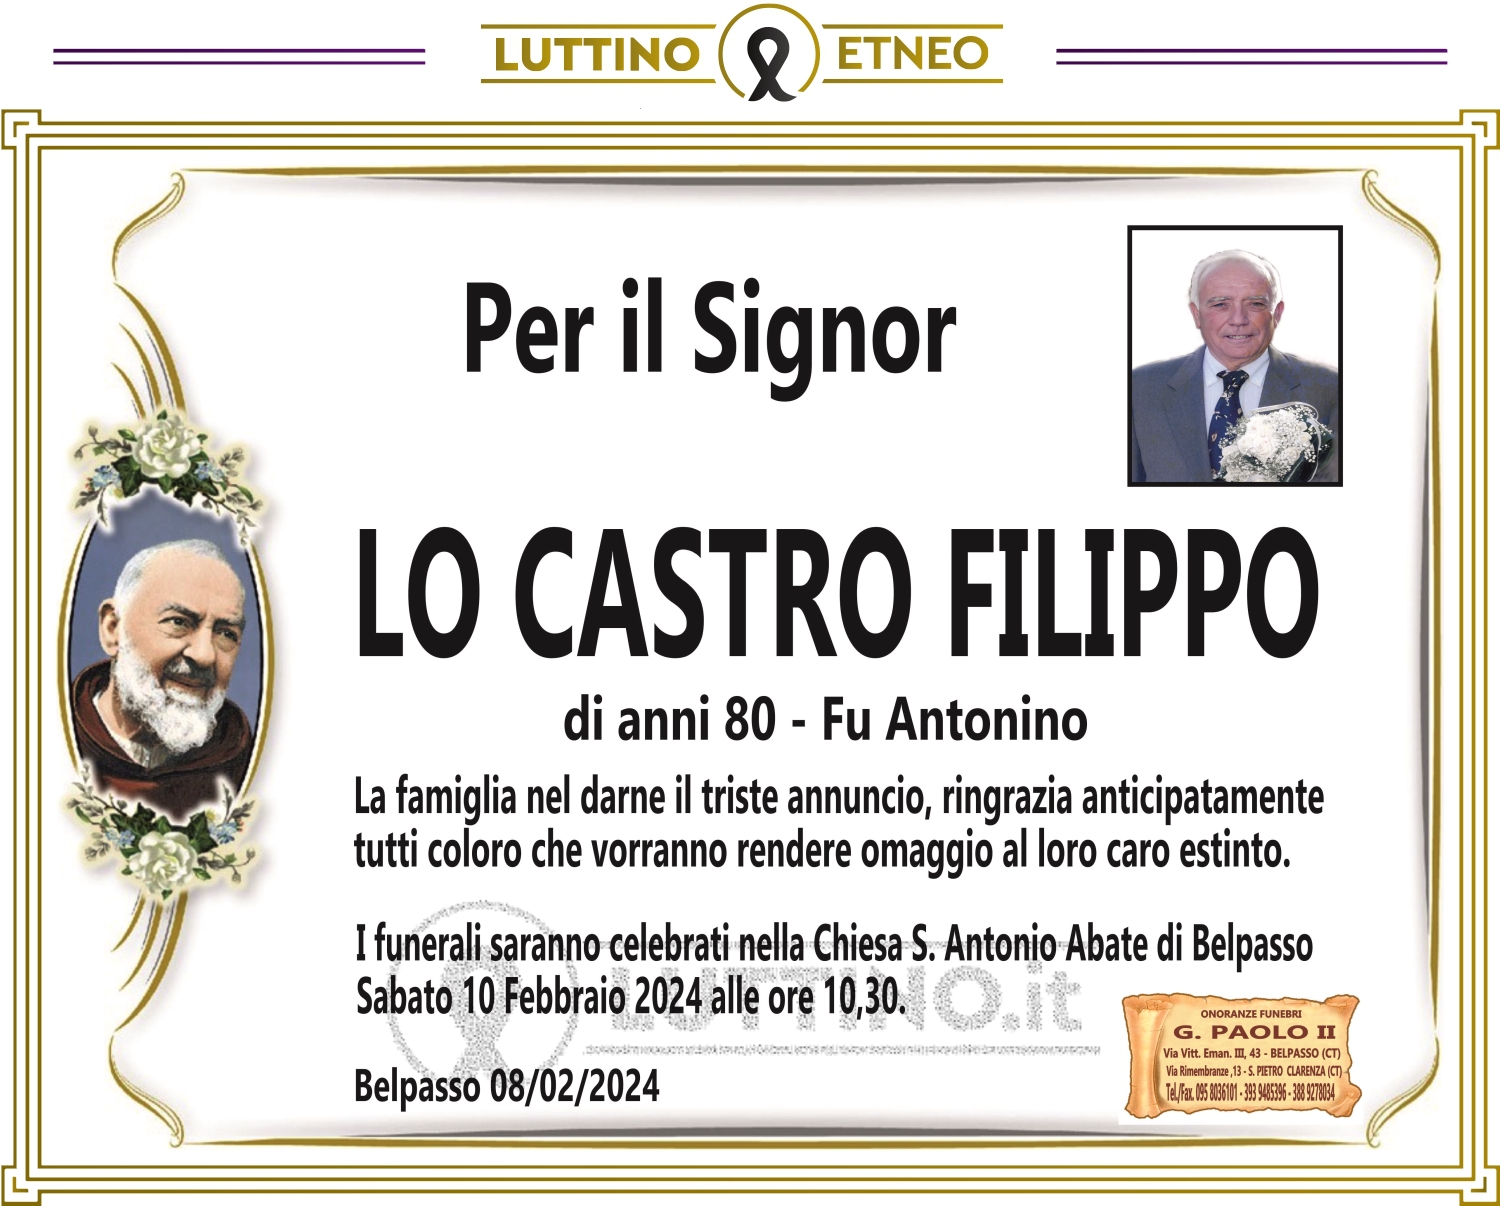 Filippo Lo Castro